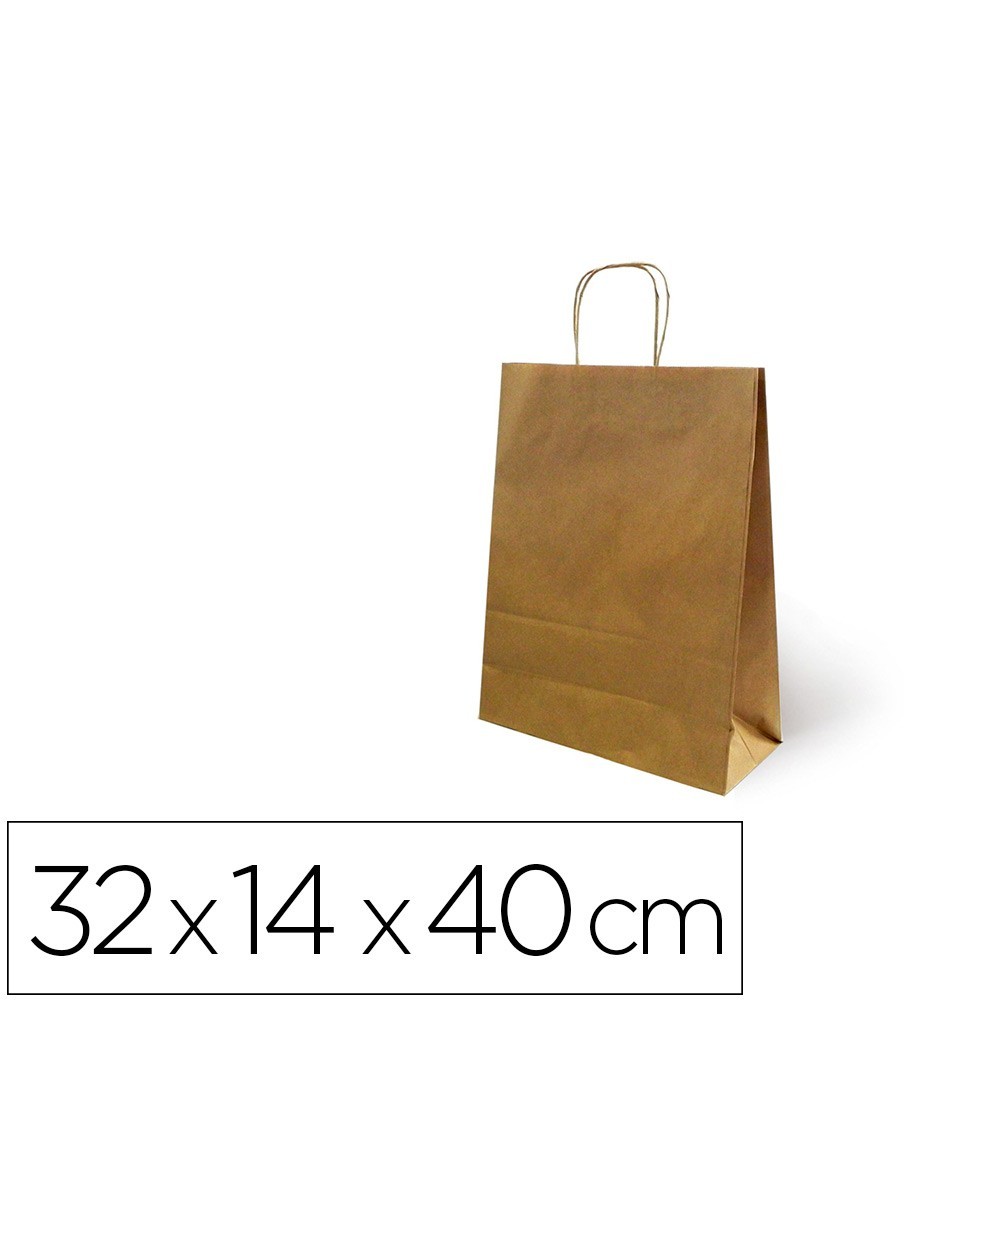 Bolsa de papel basika kraft reciclado asa retorcida liso natural tamano l 320x140x400 mm